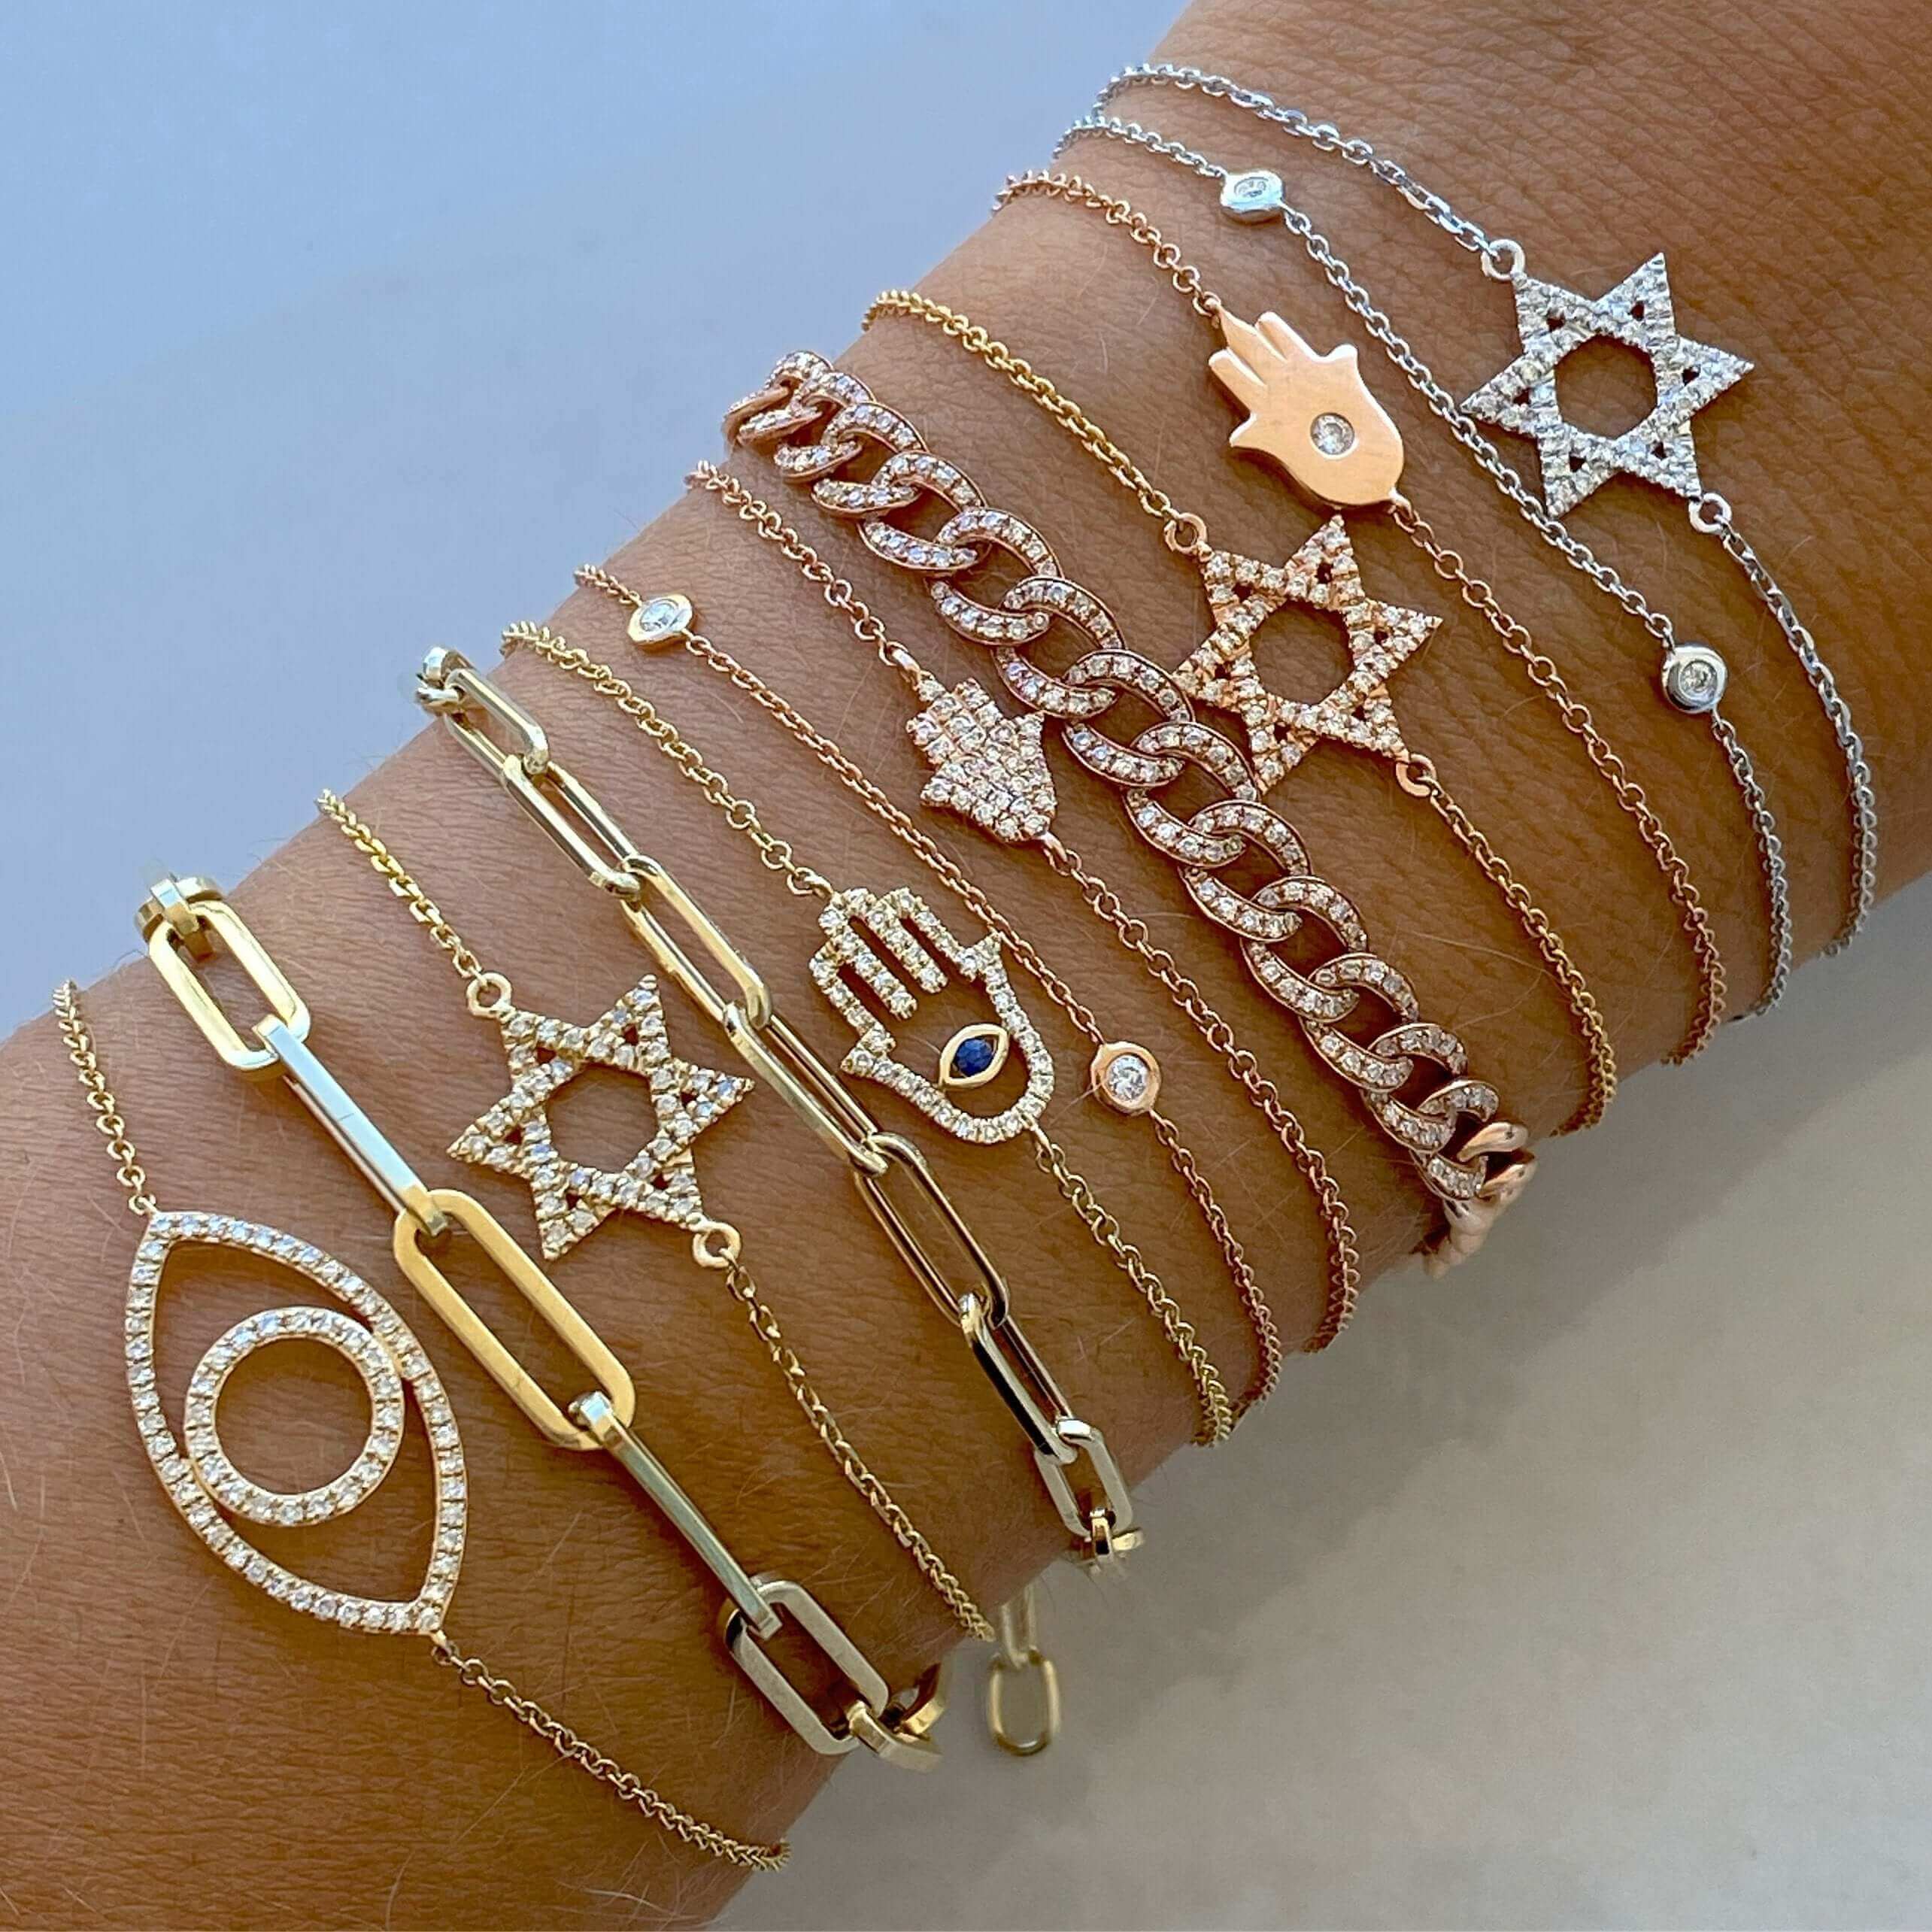 14K Gold Paper Clip Link Chain Bracelet - Bracelets - Izakov Diamonds + Fine Jewelry